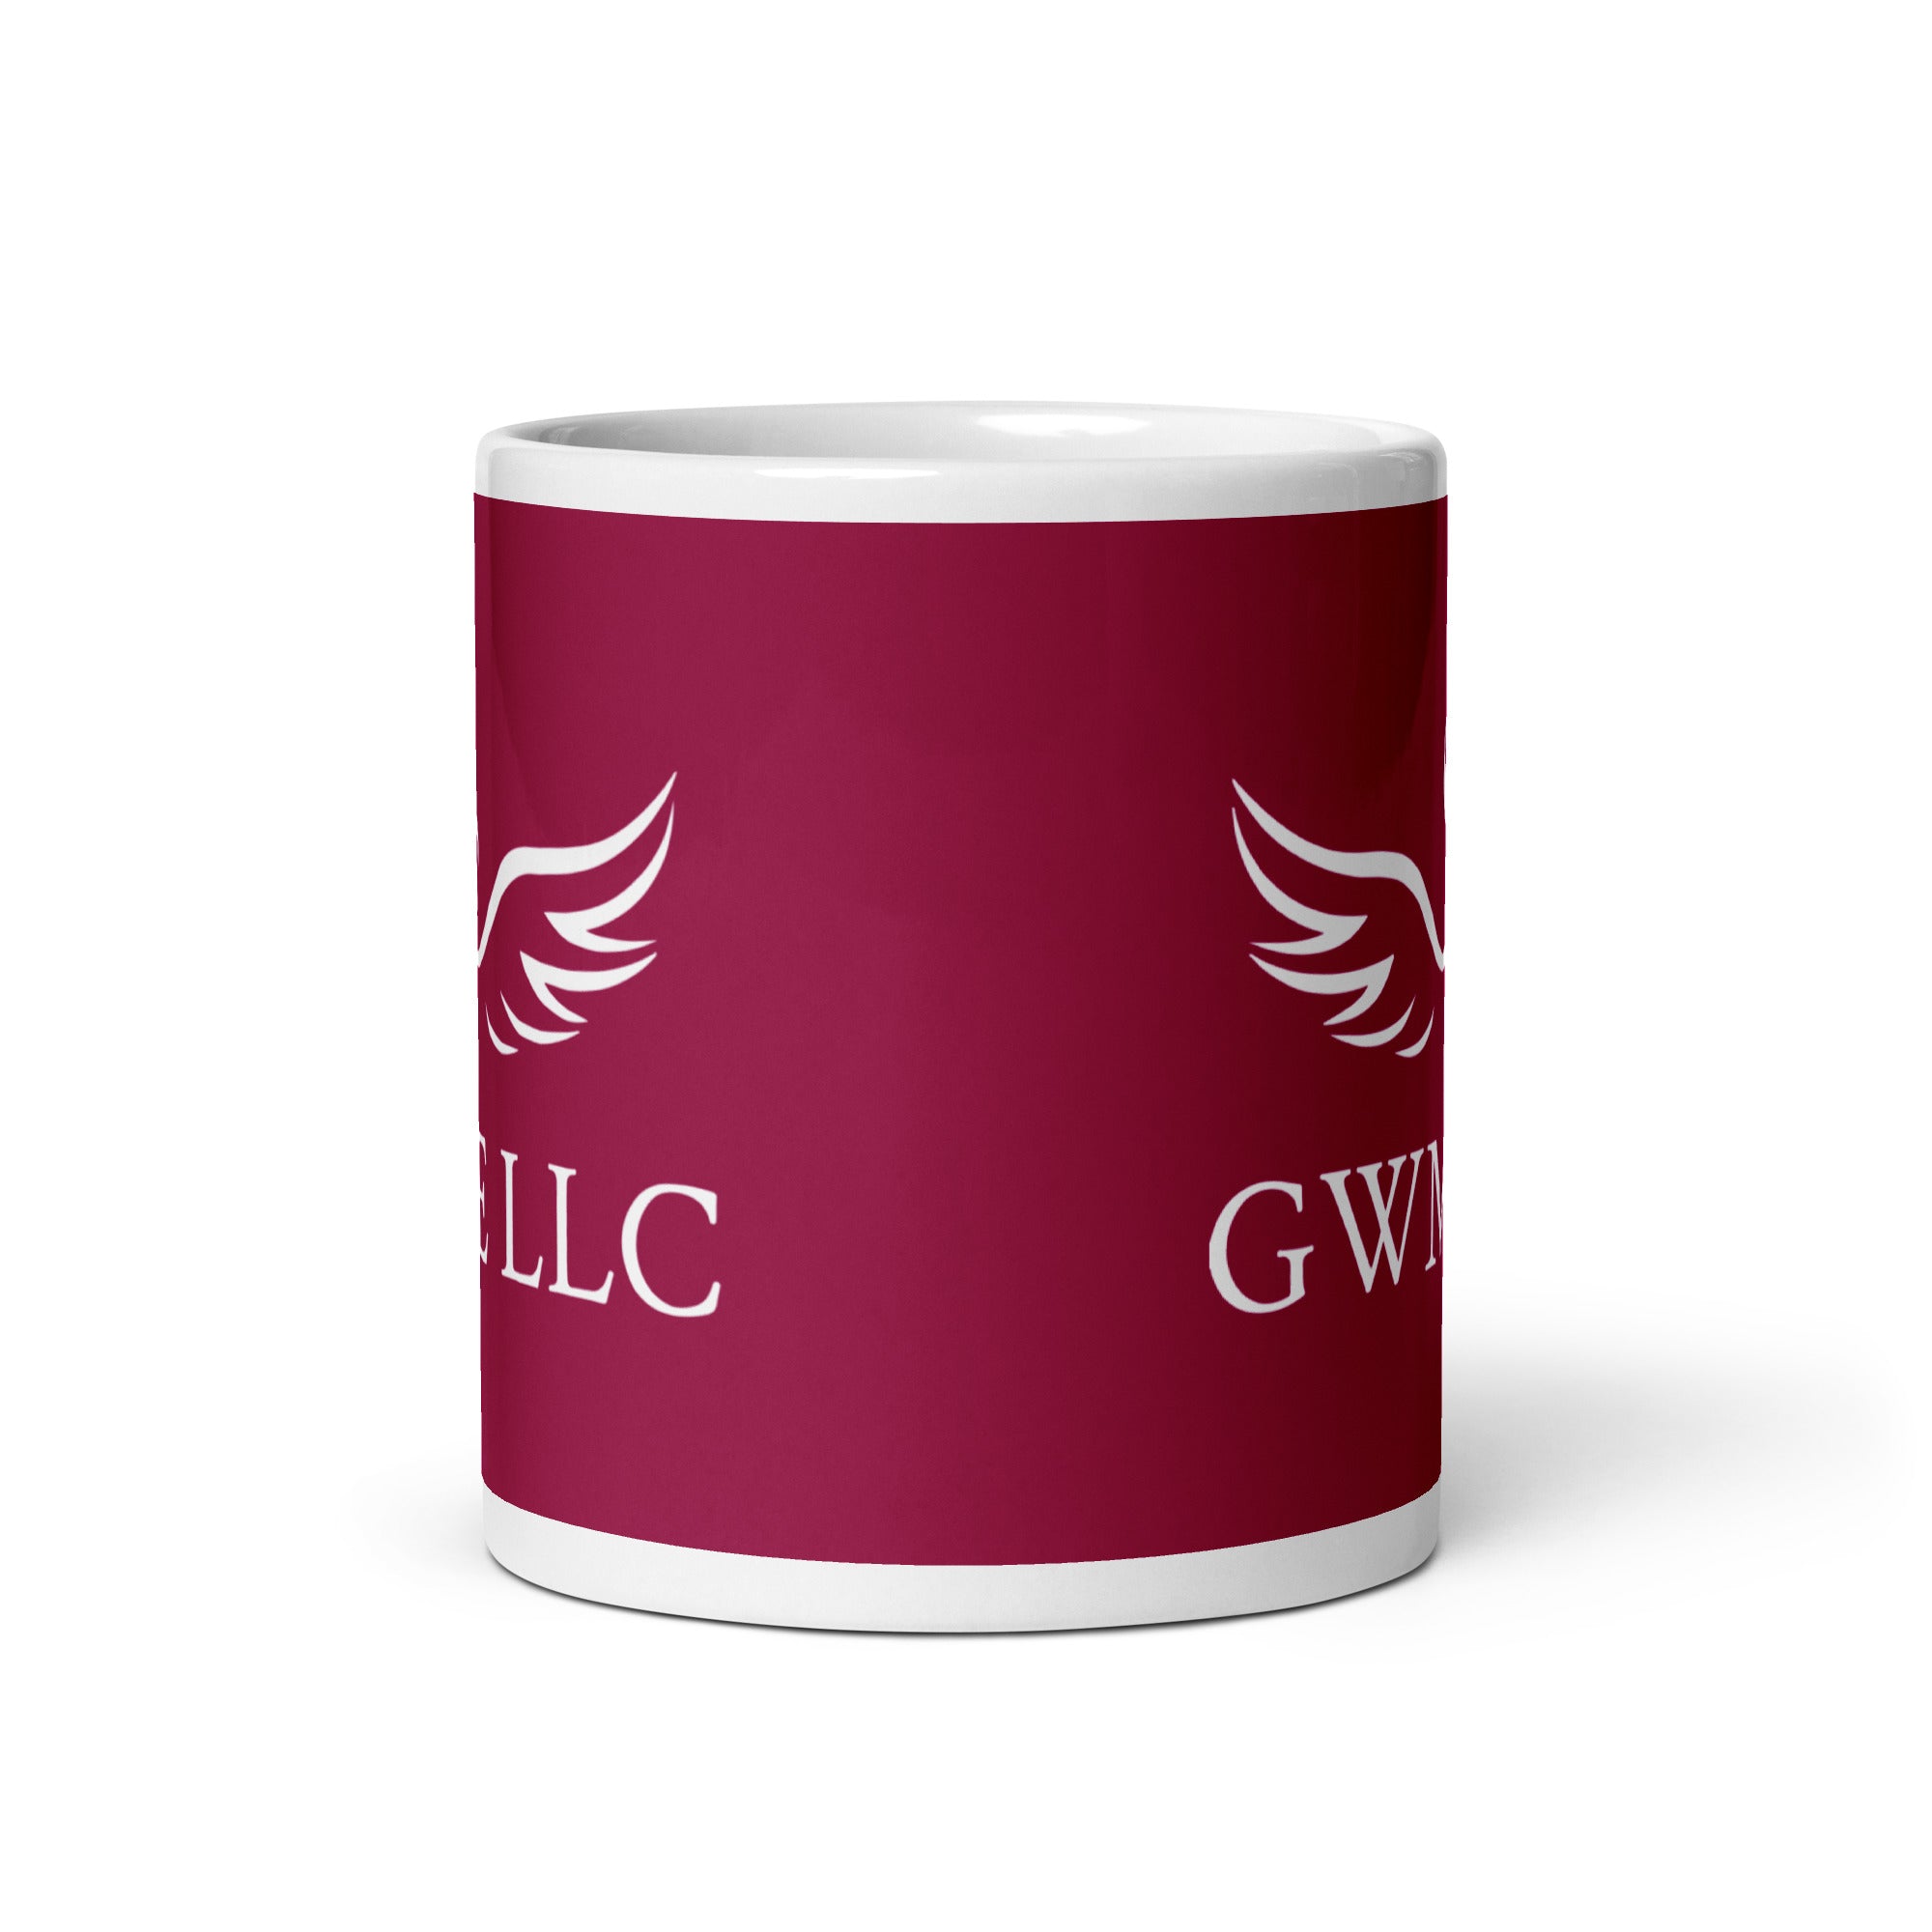 GWME White glossy mug